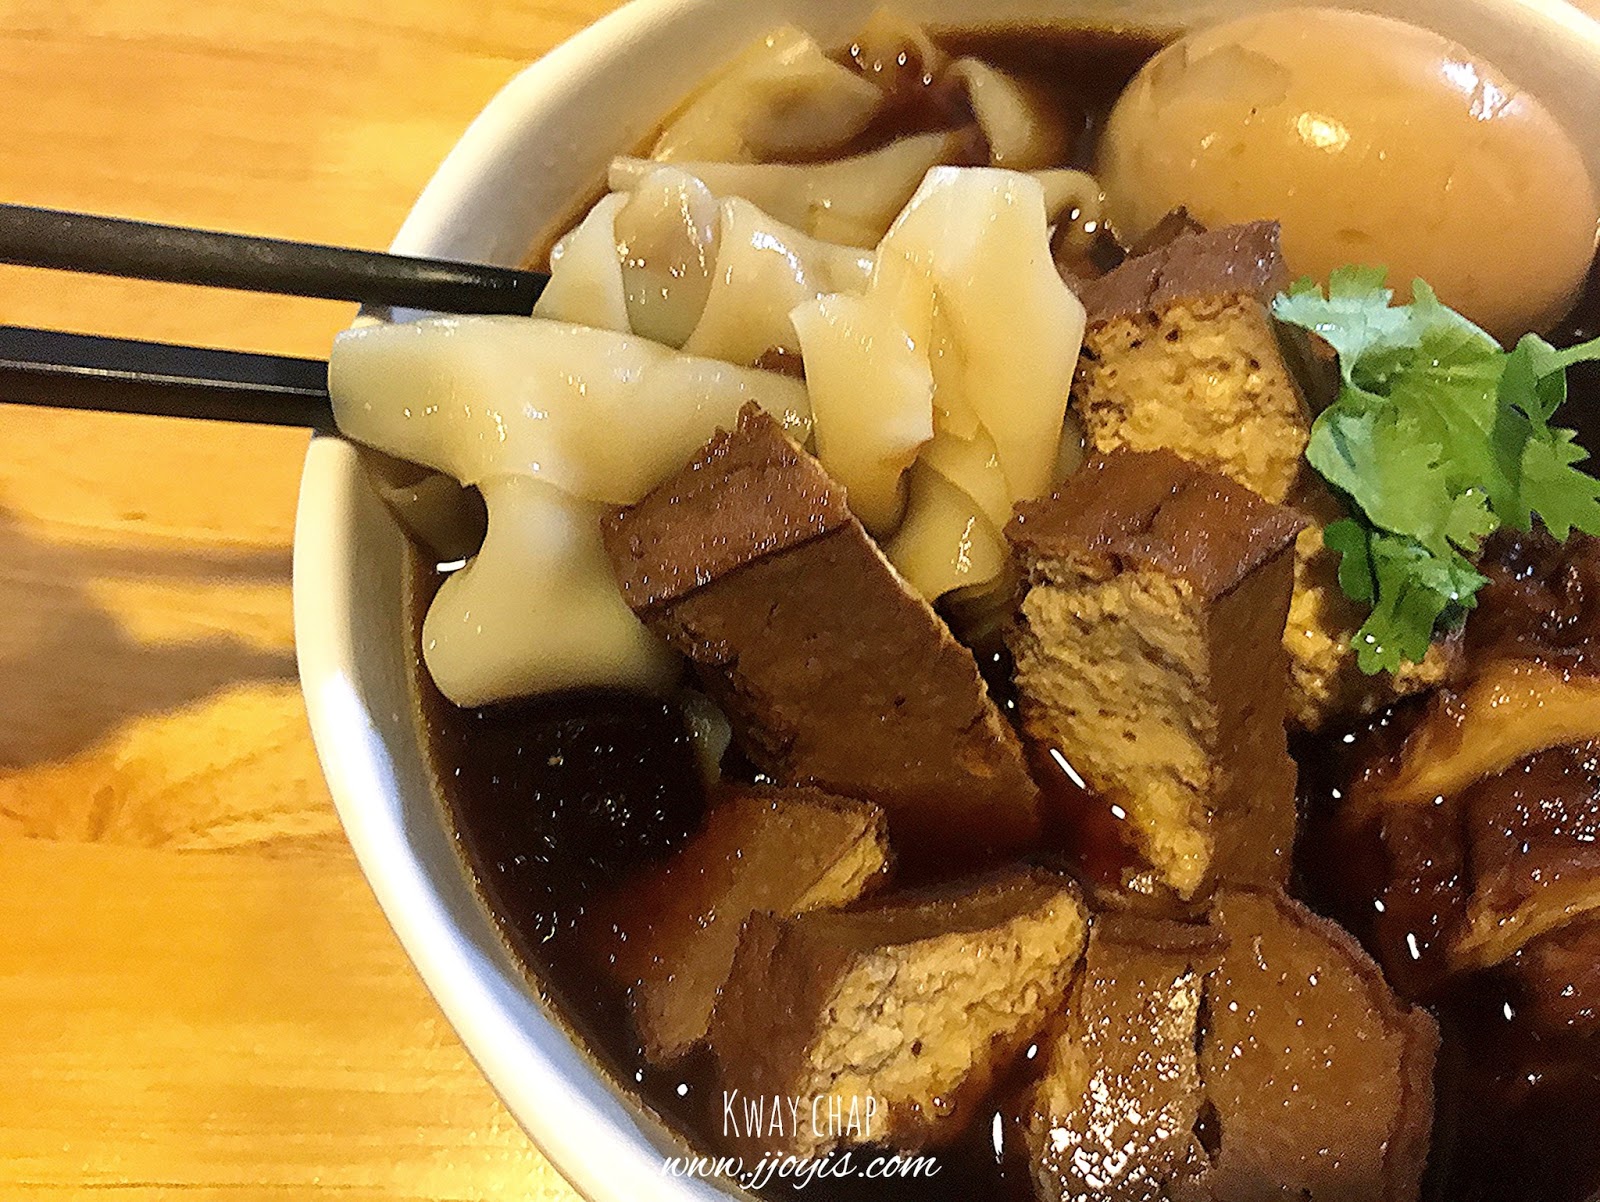 zi zi vegetarian yishun food review kway chap